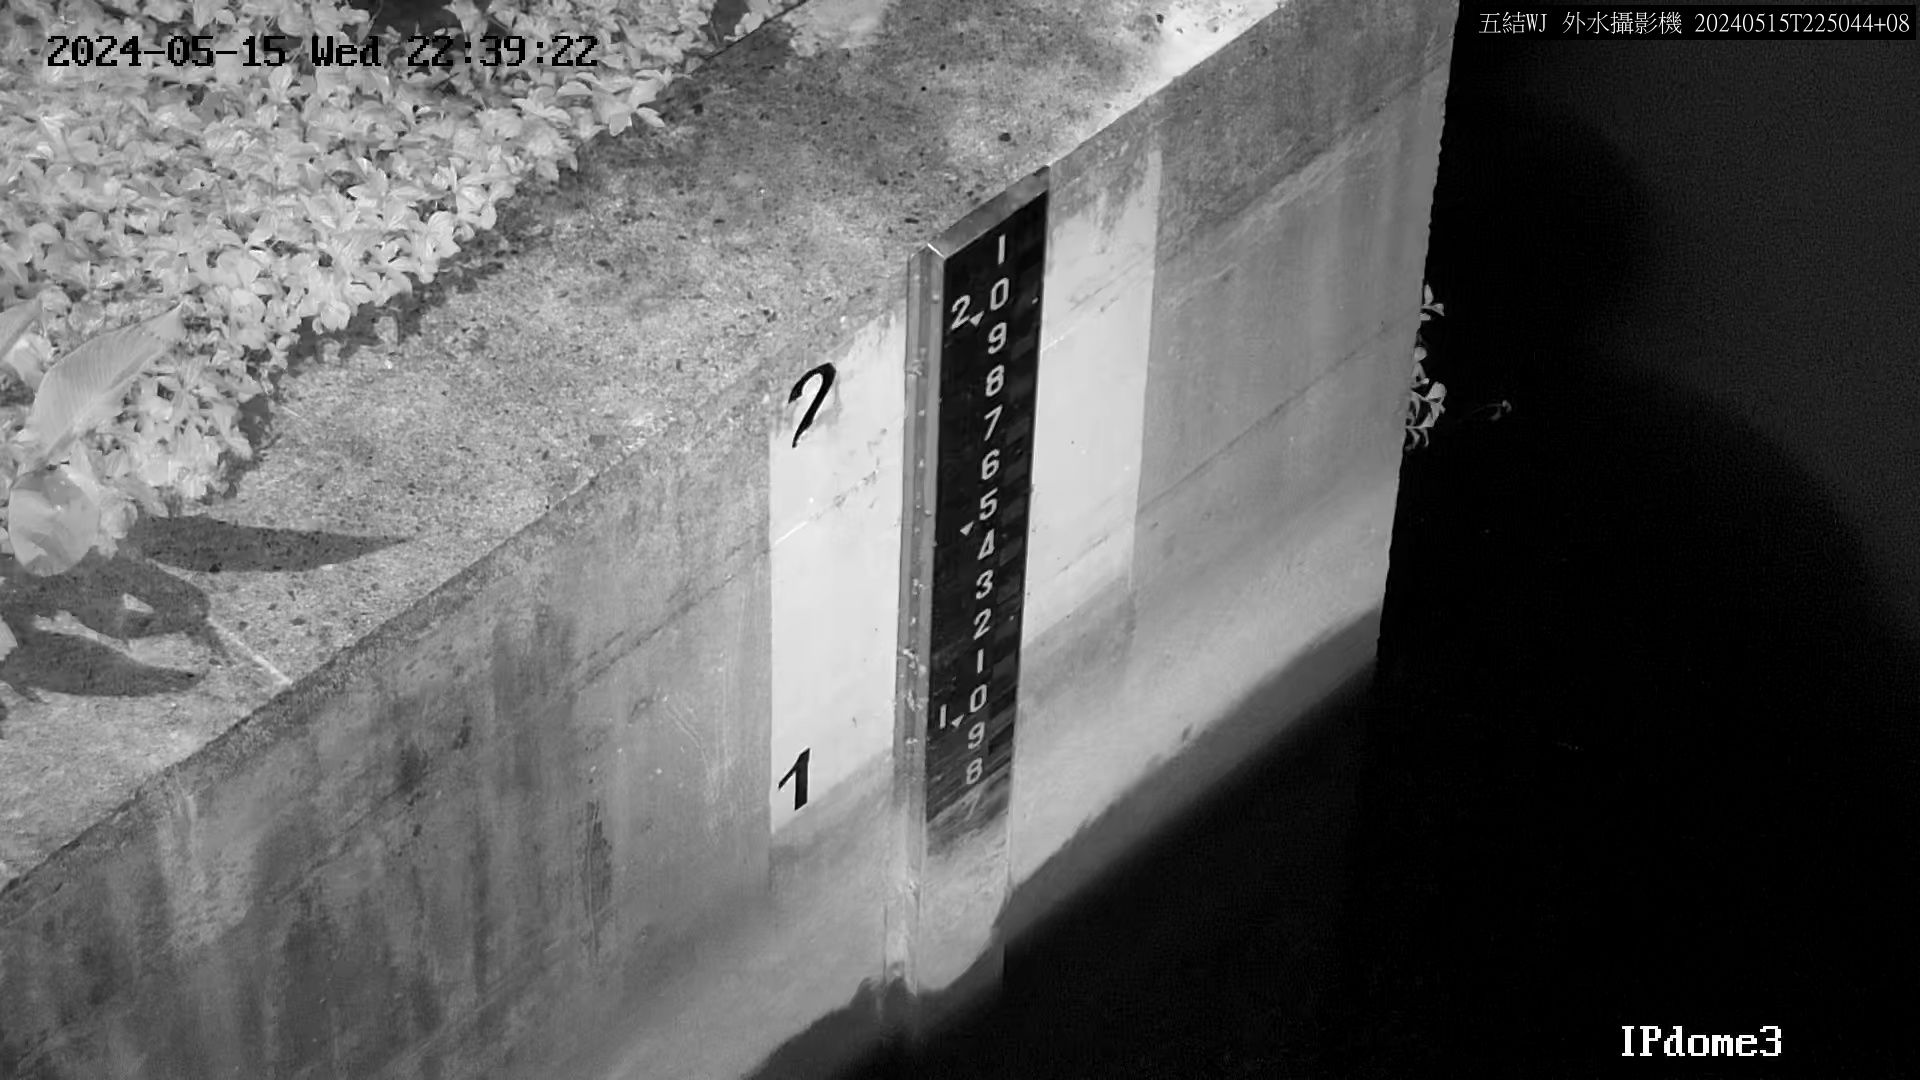 水利署水資源  一河局 五結副閘排水防潮閘門外水位 距離1.7公里 氣溫25.9度